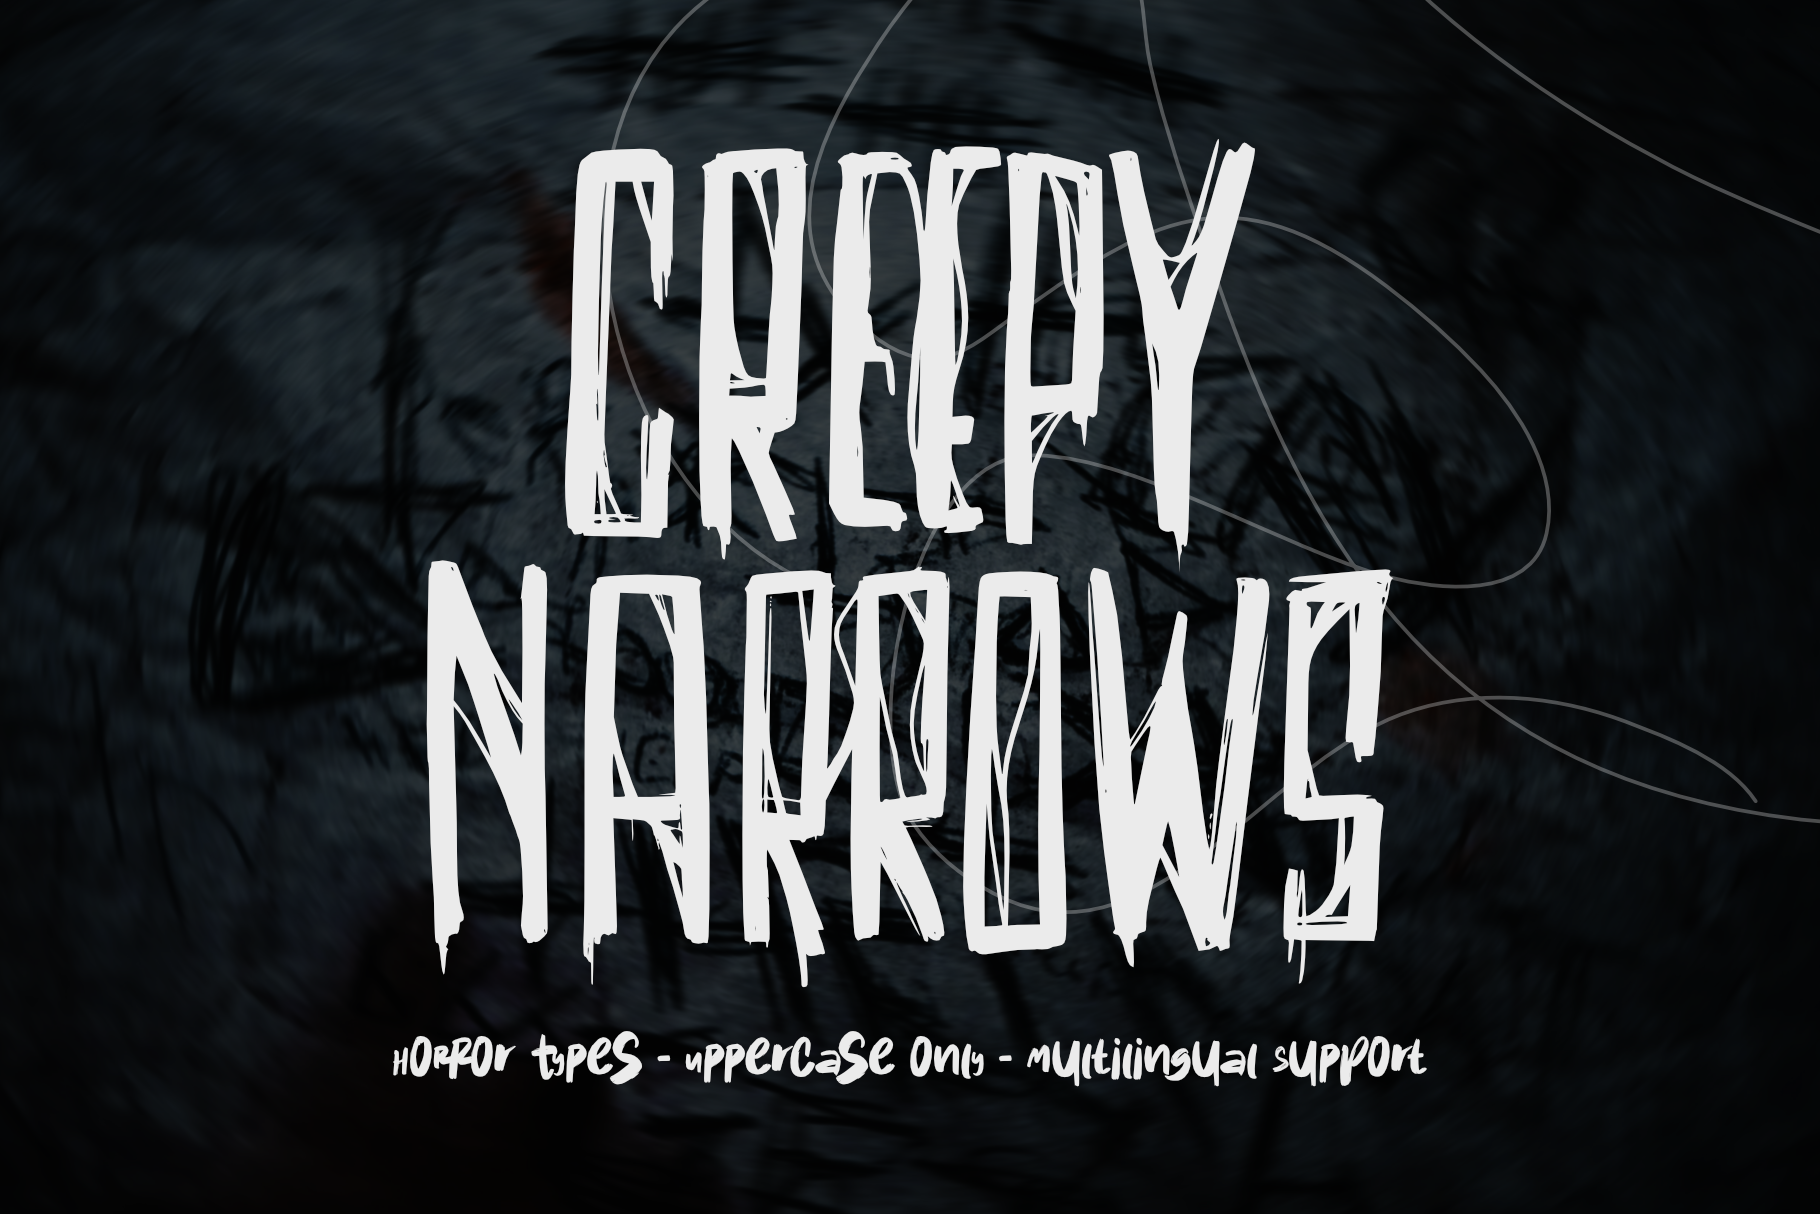 Creepy Narrows